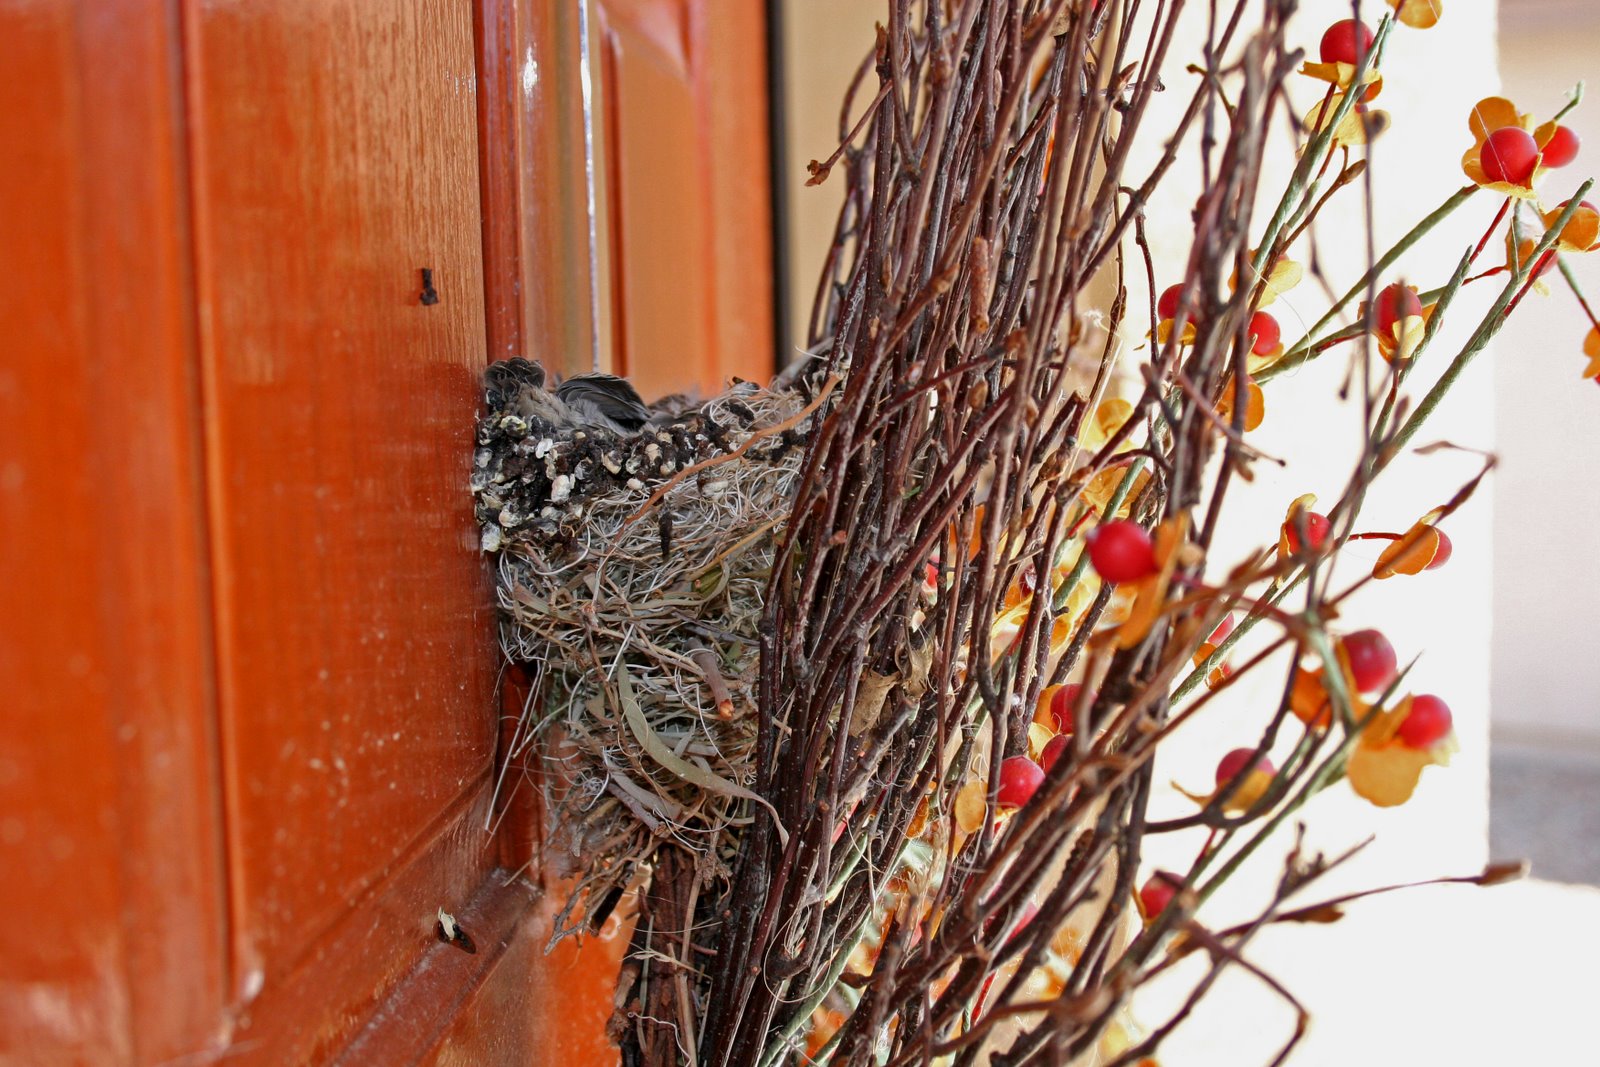 [Birds+nest+on+front+door+behind+wreath+d.jpg]